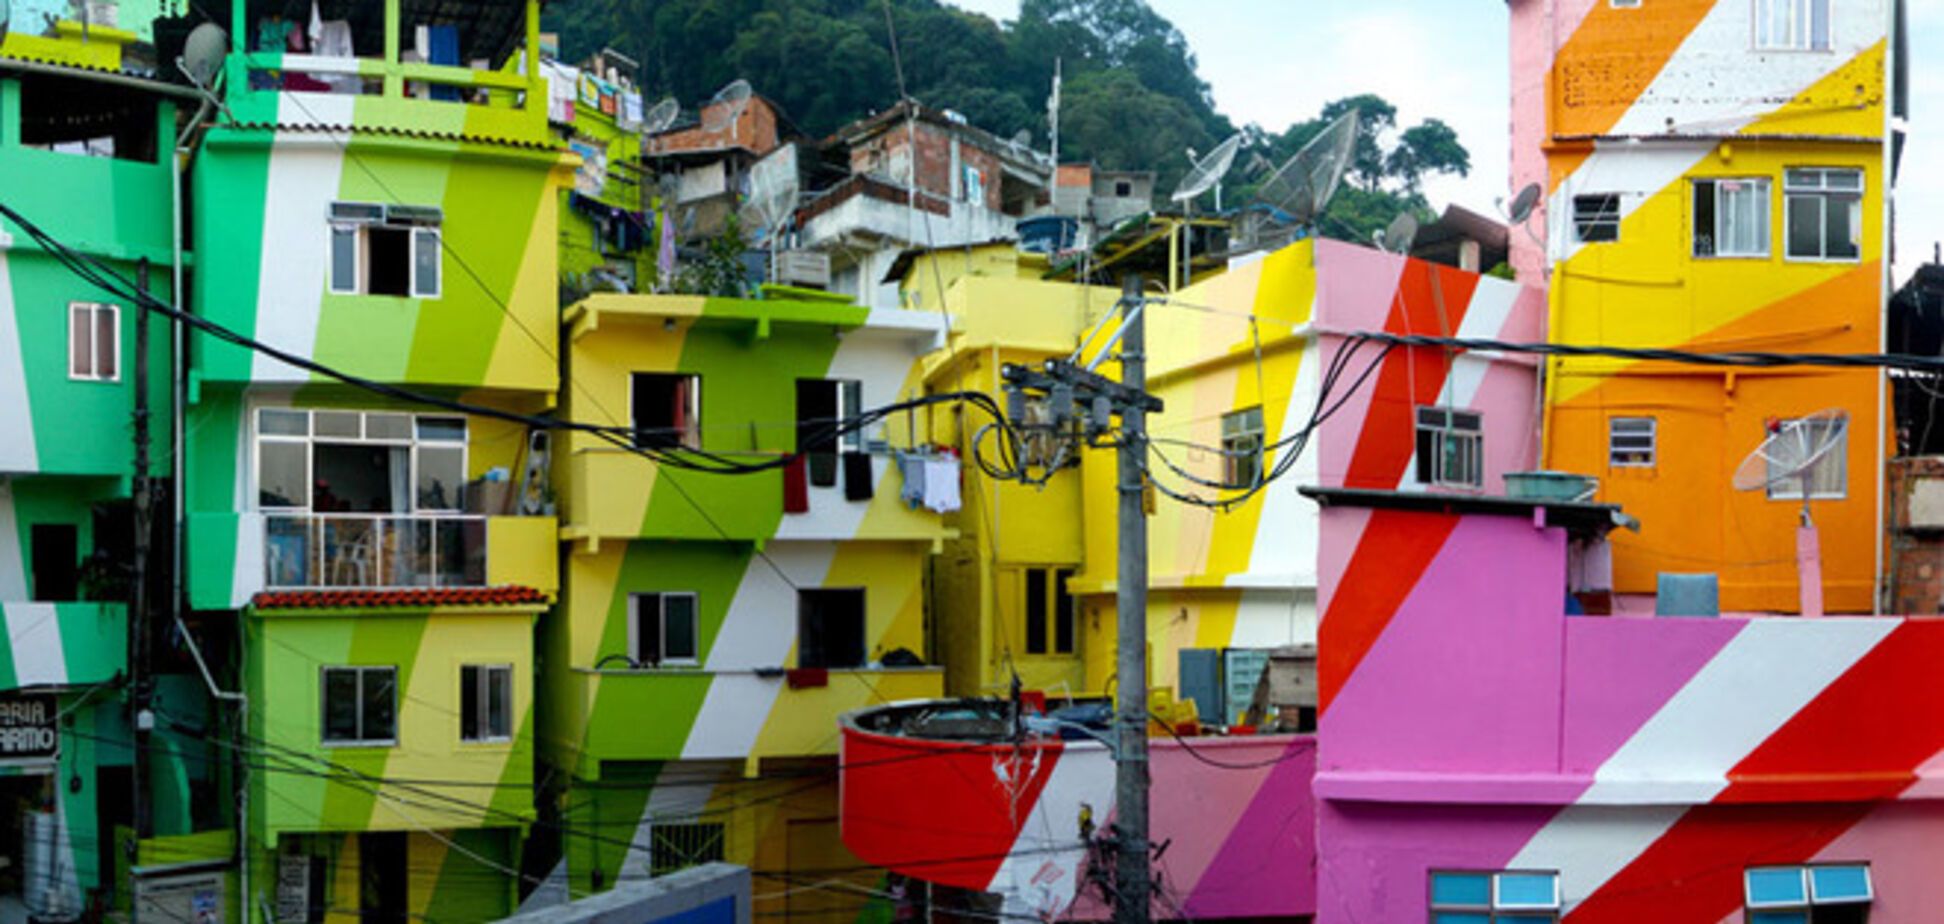 Самые яркие и красочные жилые дома в мире